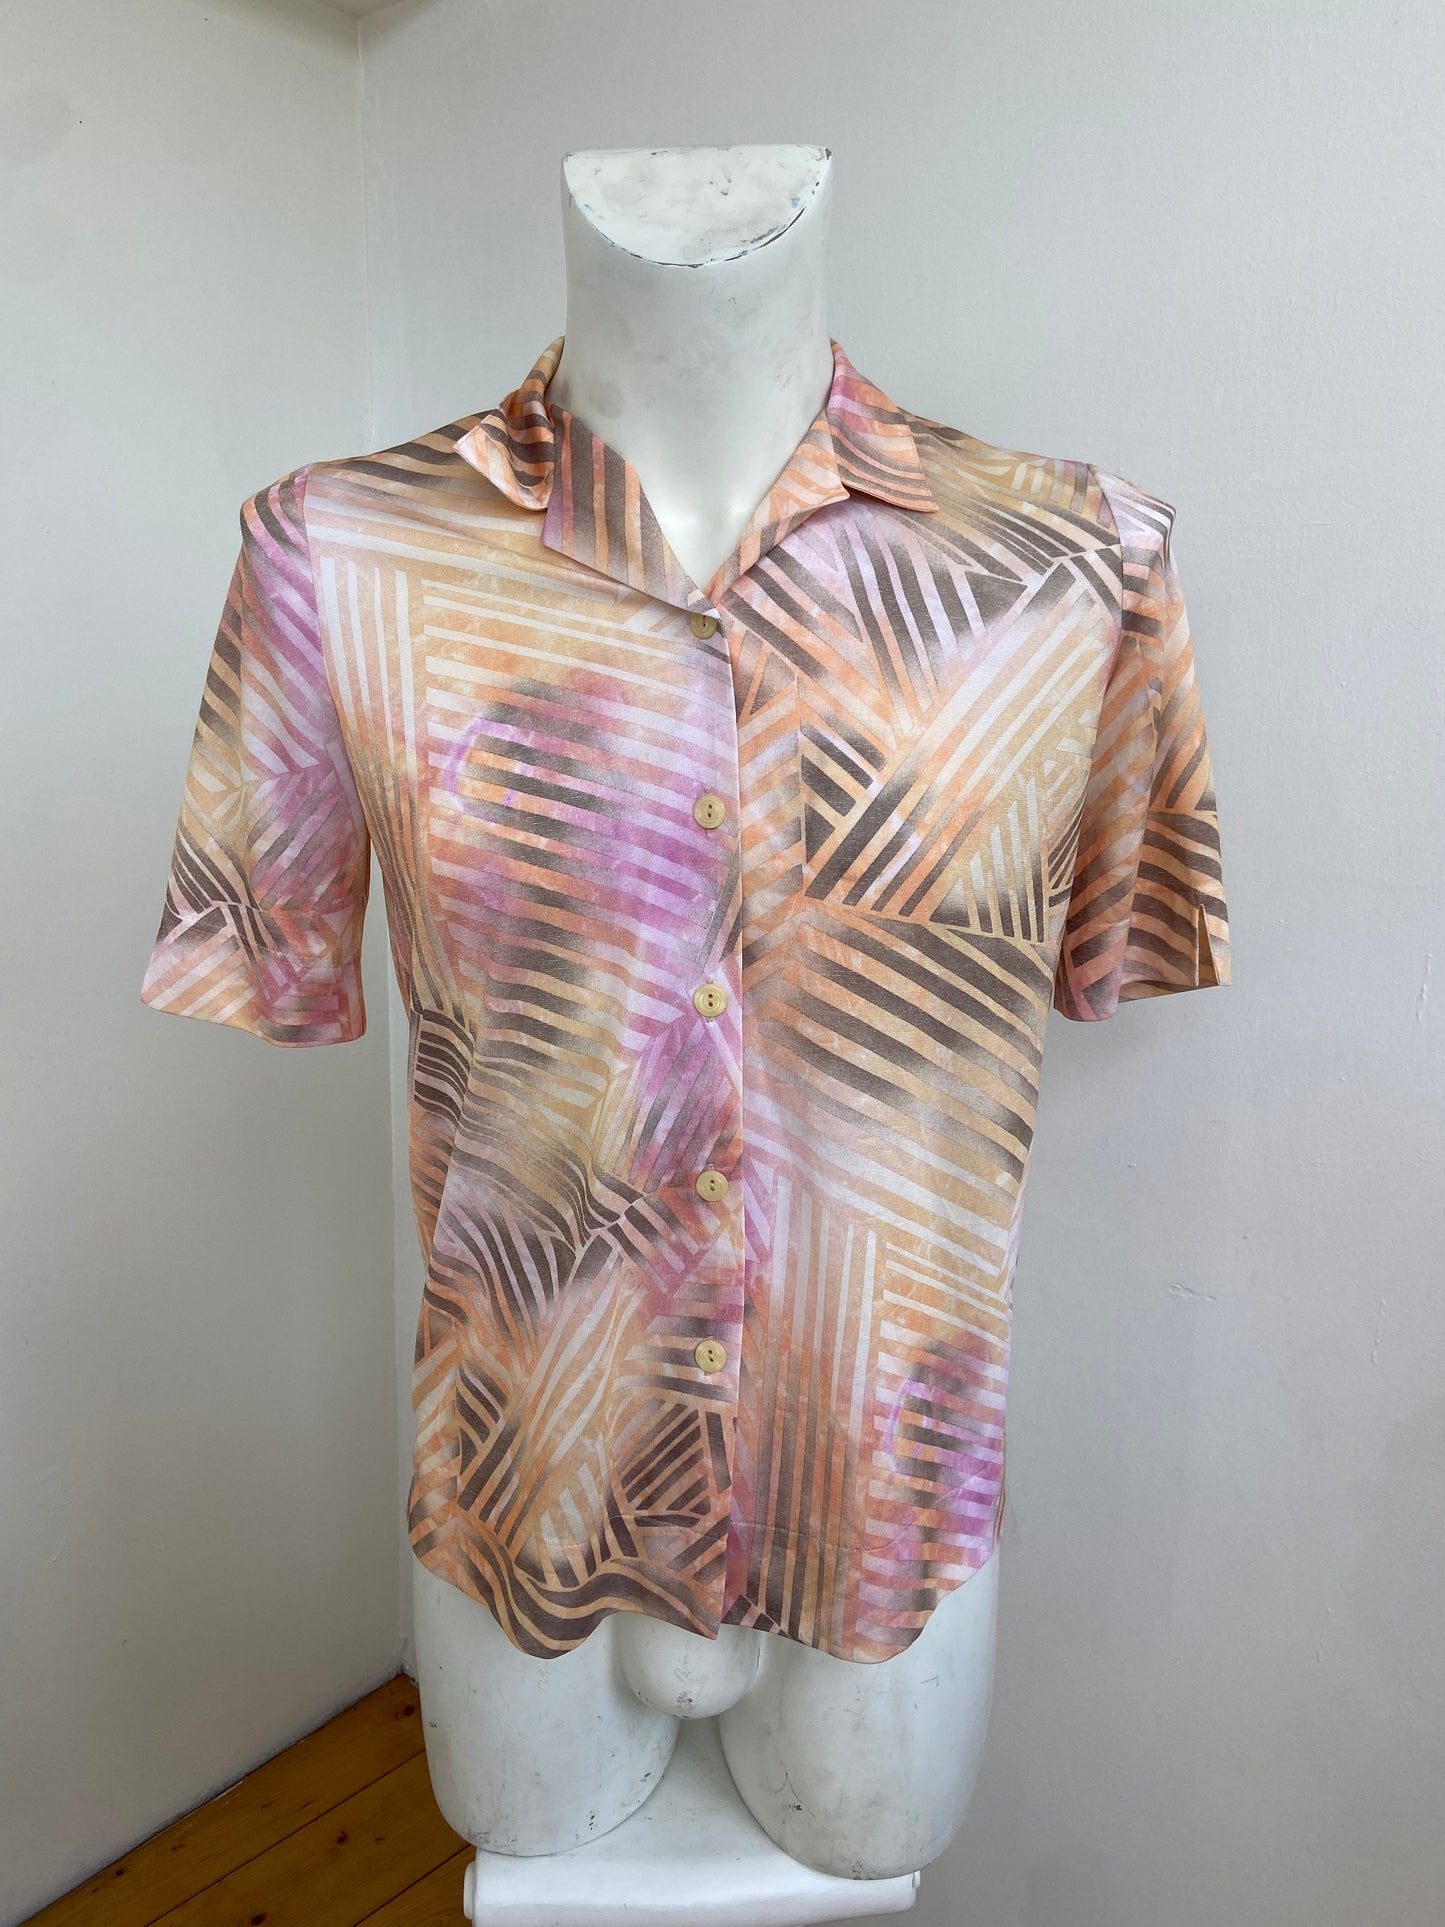 Peachy stripes shirt